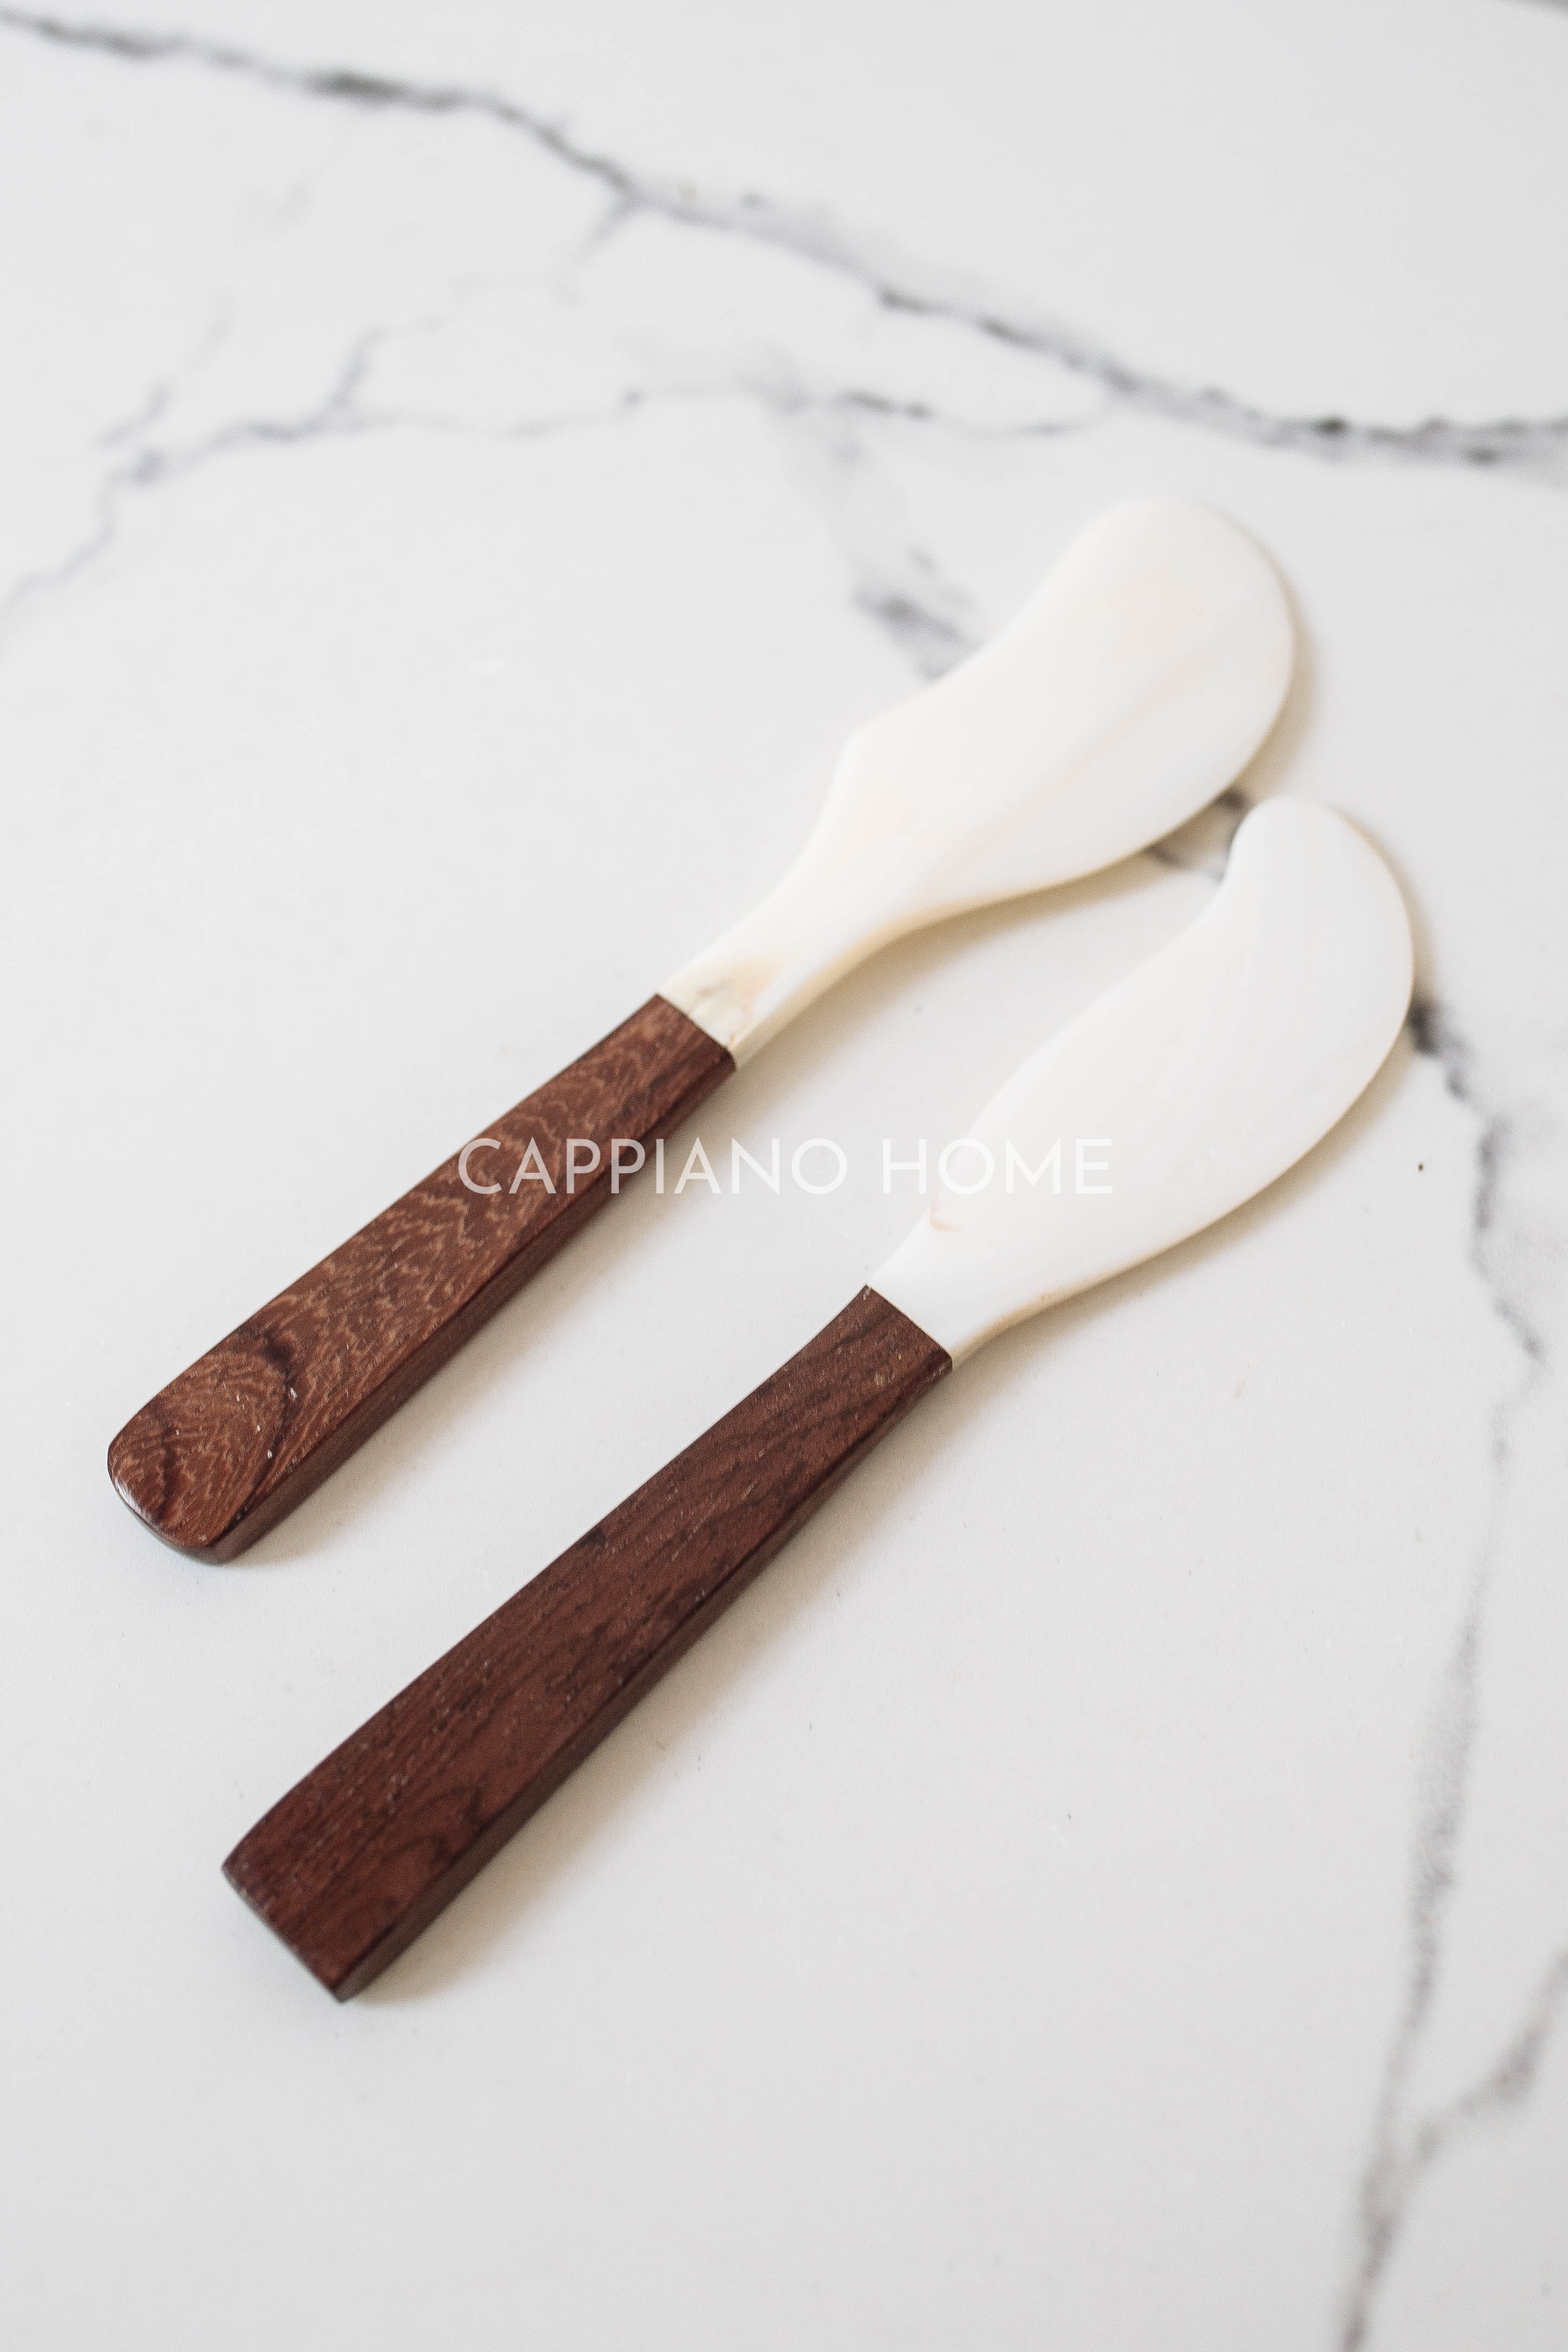 Dao chuôi gỗ đen , dao khảm trai phết bơ, mứt, pho mai tiện lợi | Cappiano Home